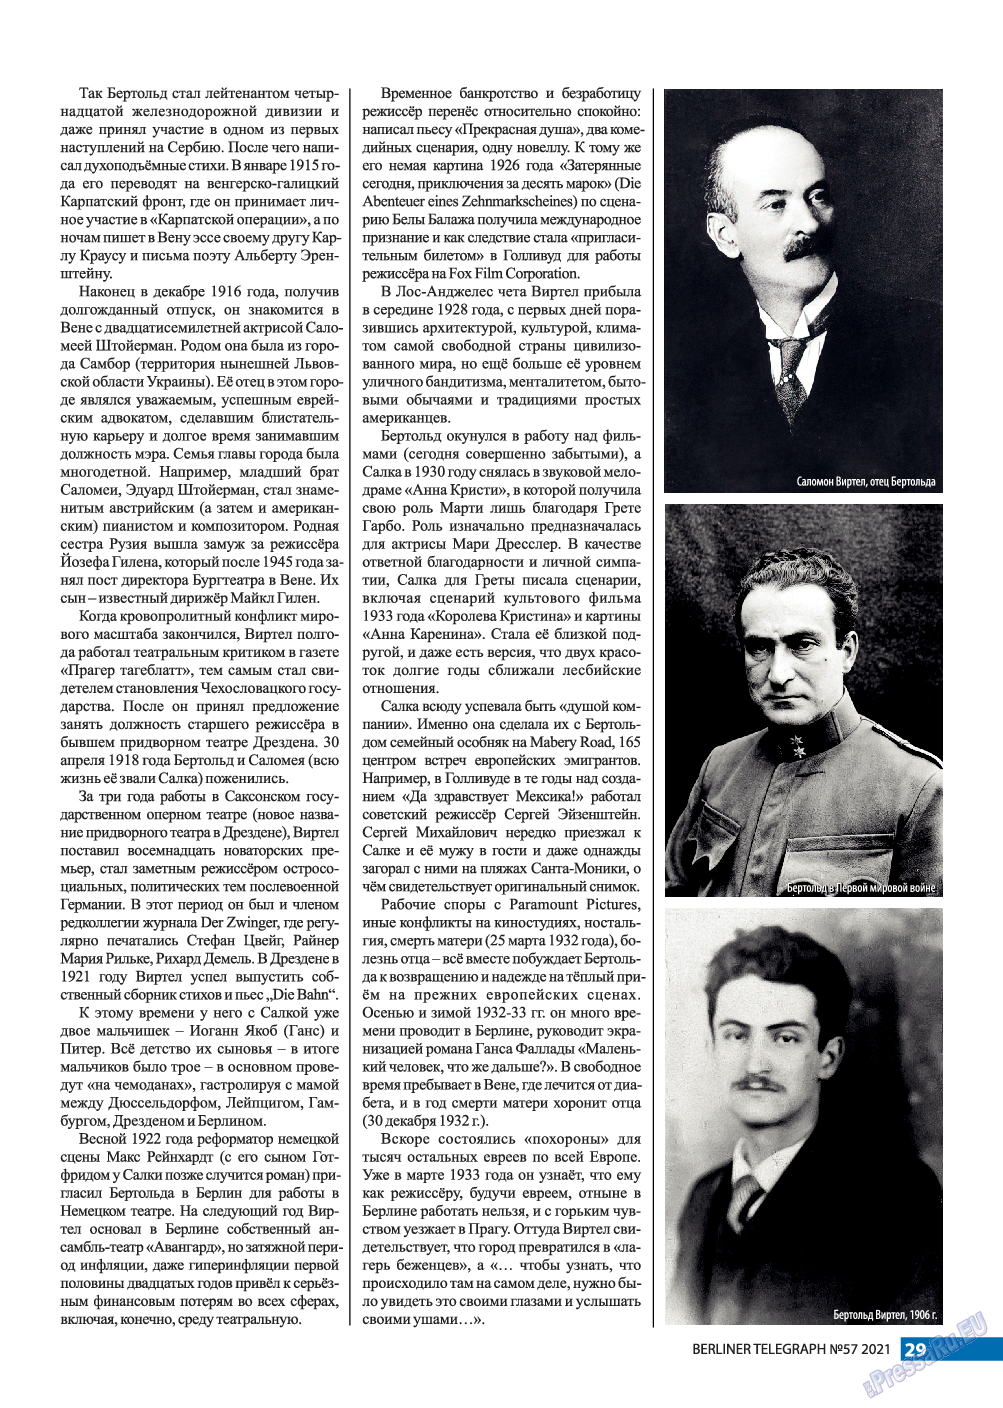 Берлинский телеграф, журнал. 2021 №57 стр.29